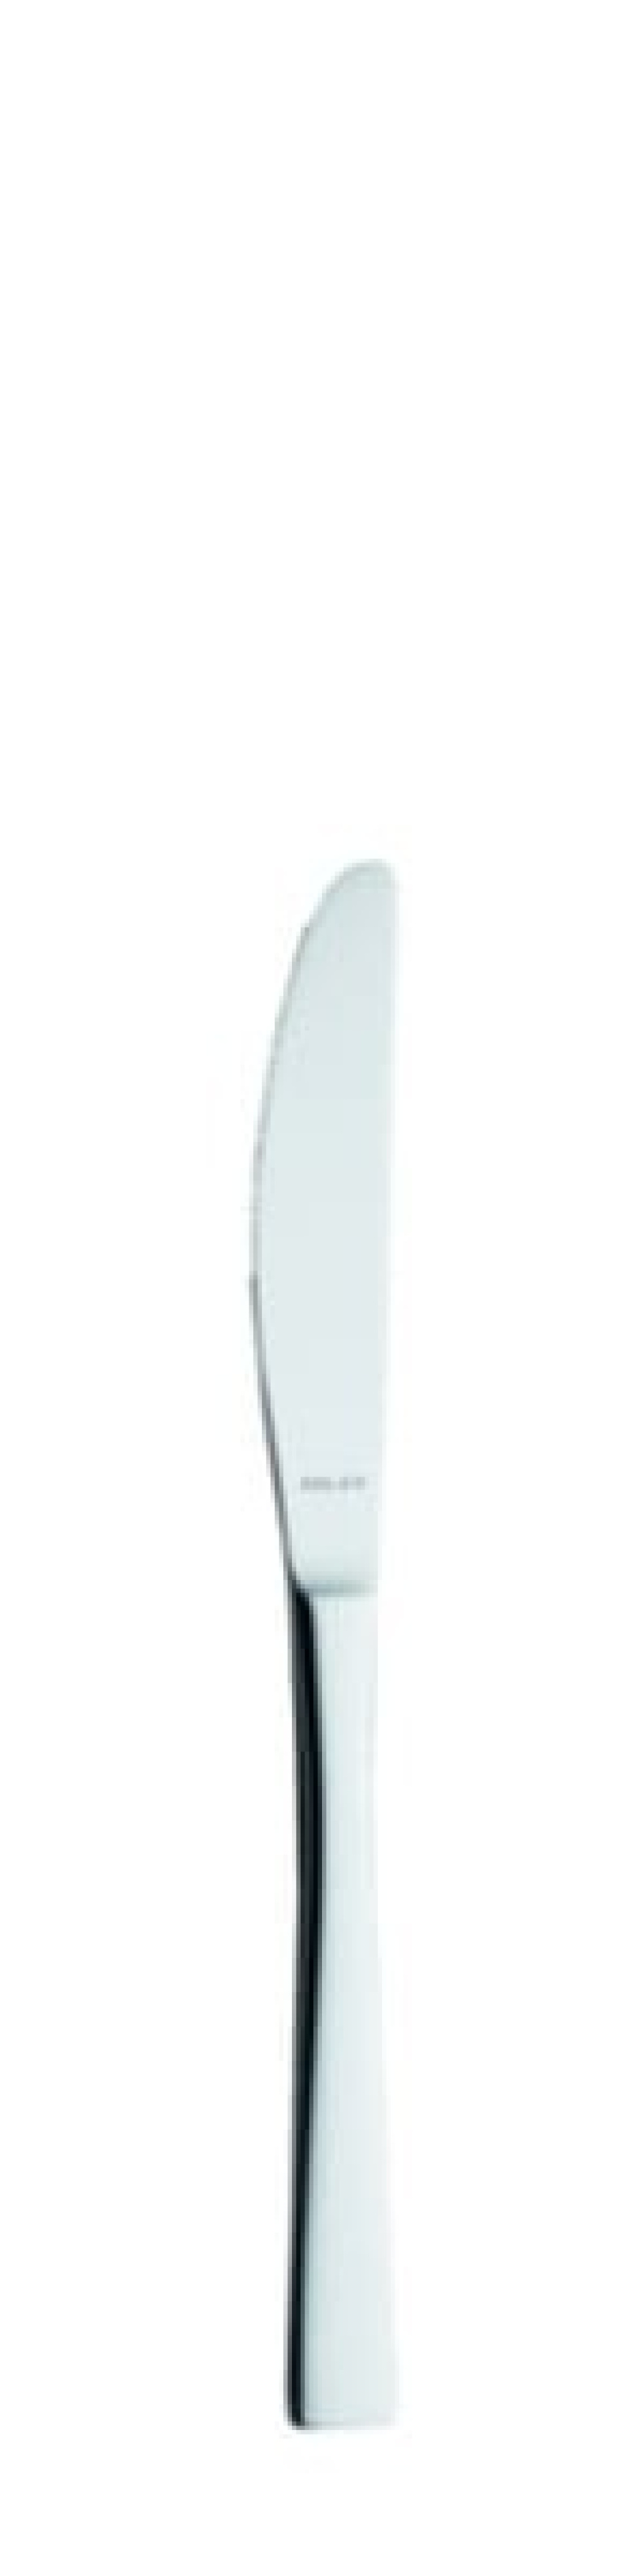 Nóż deserowy Elisabeth 195 mm - Solex w grupie Nakrycie stołu / Sztućce / Noże w The Kitchen Lab (1284-21482)